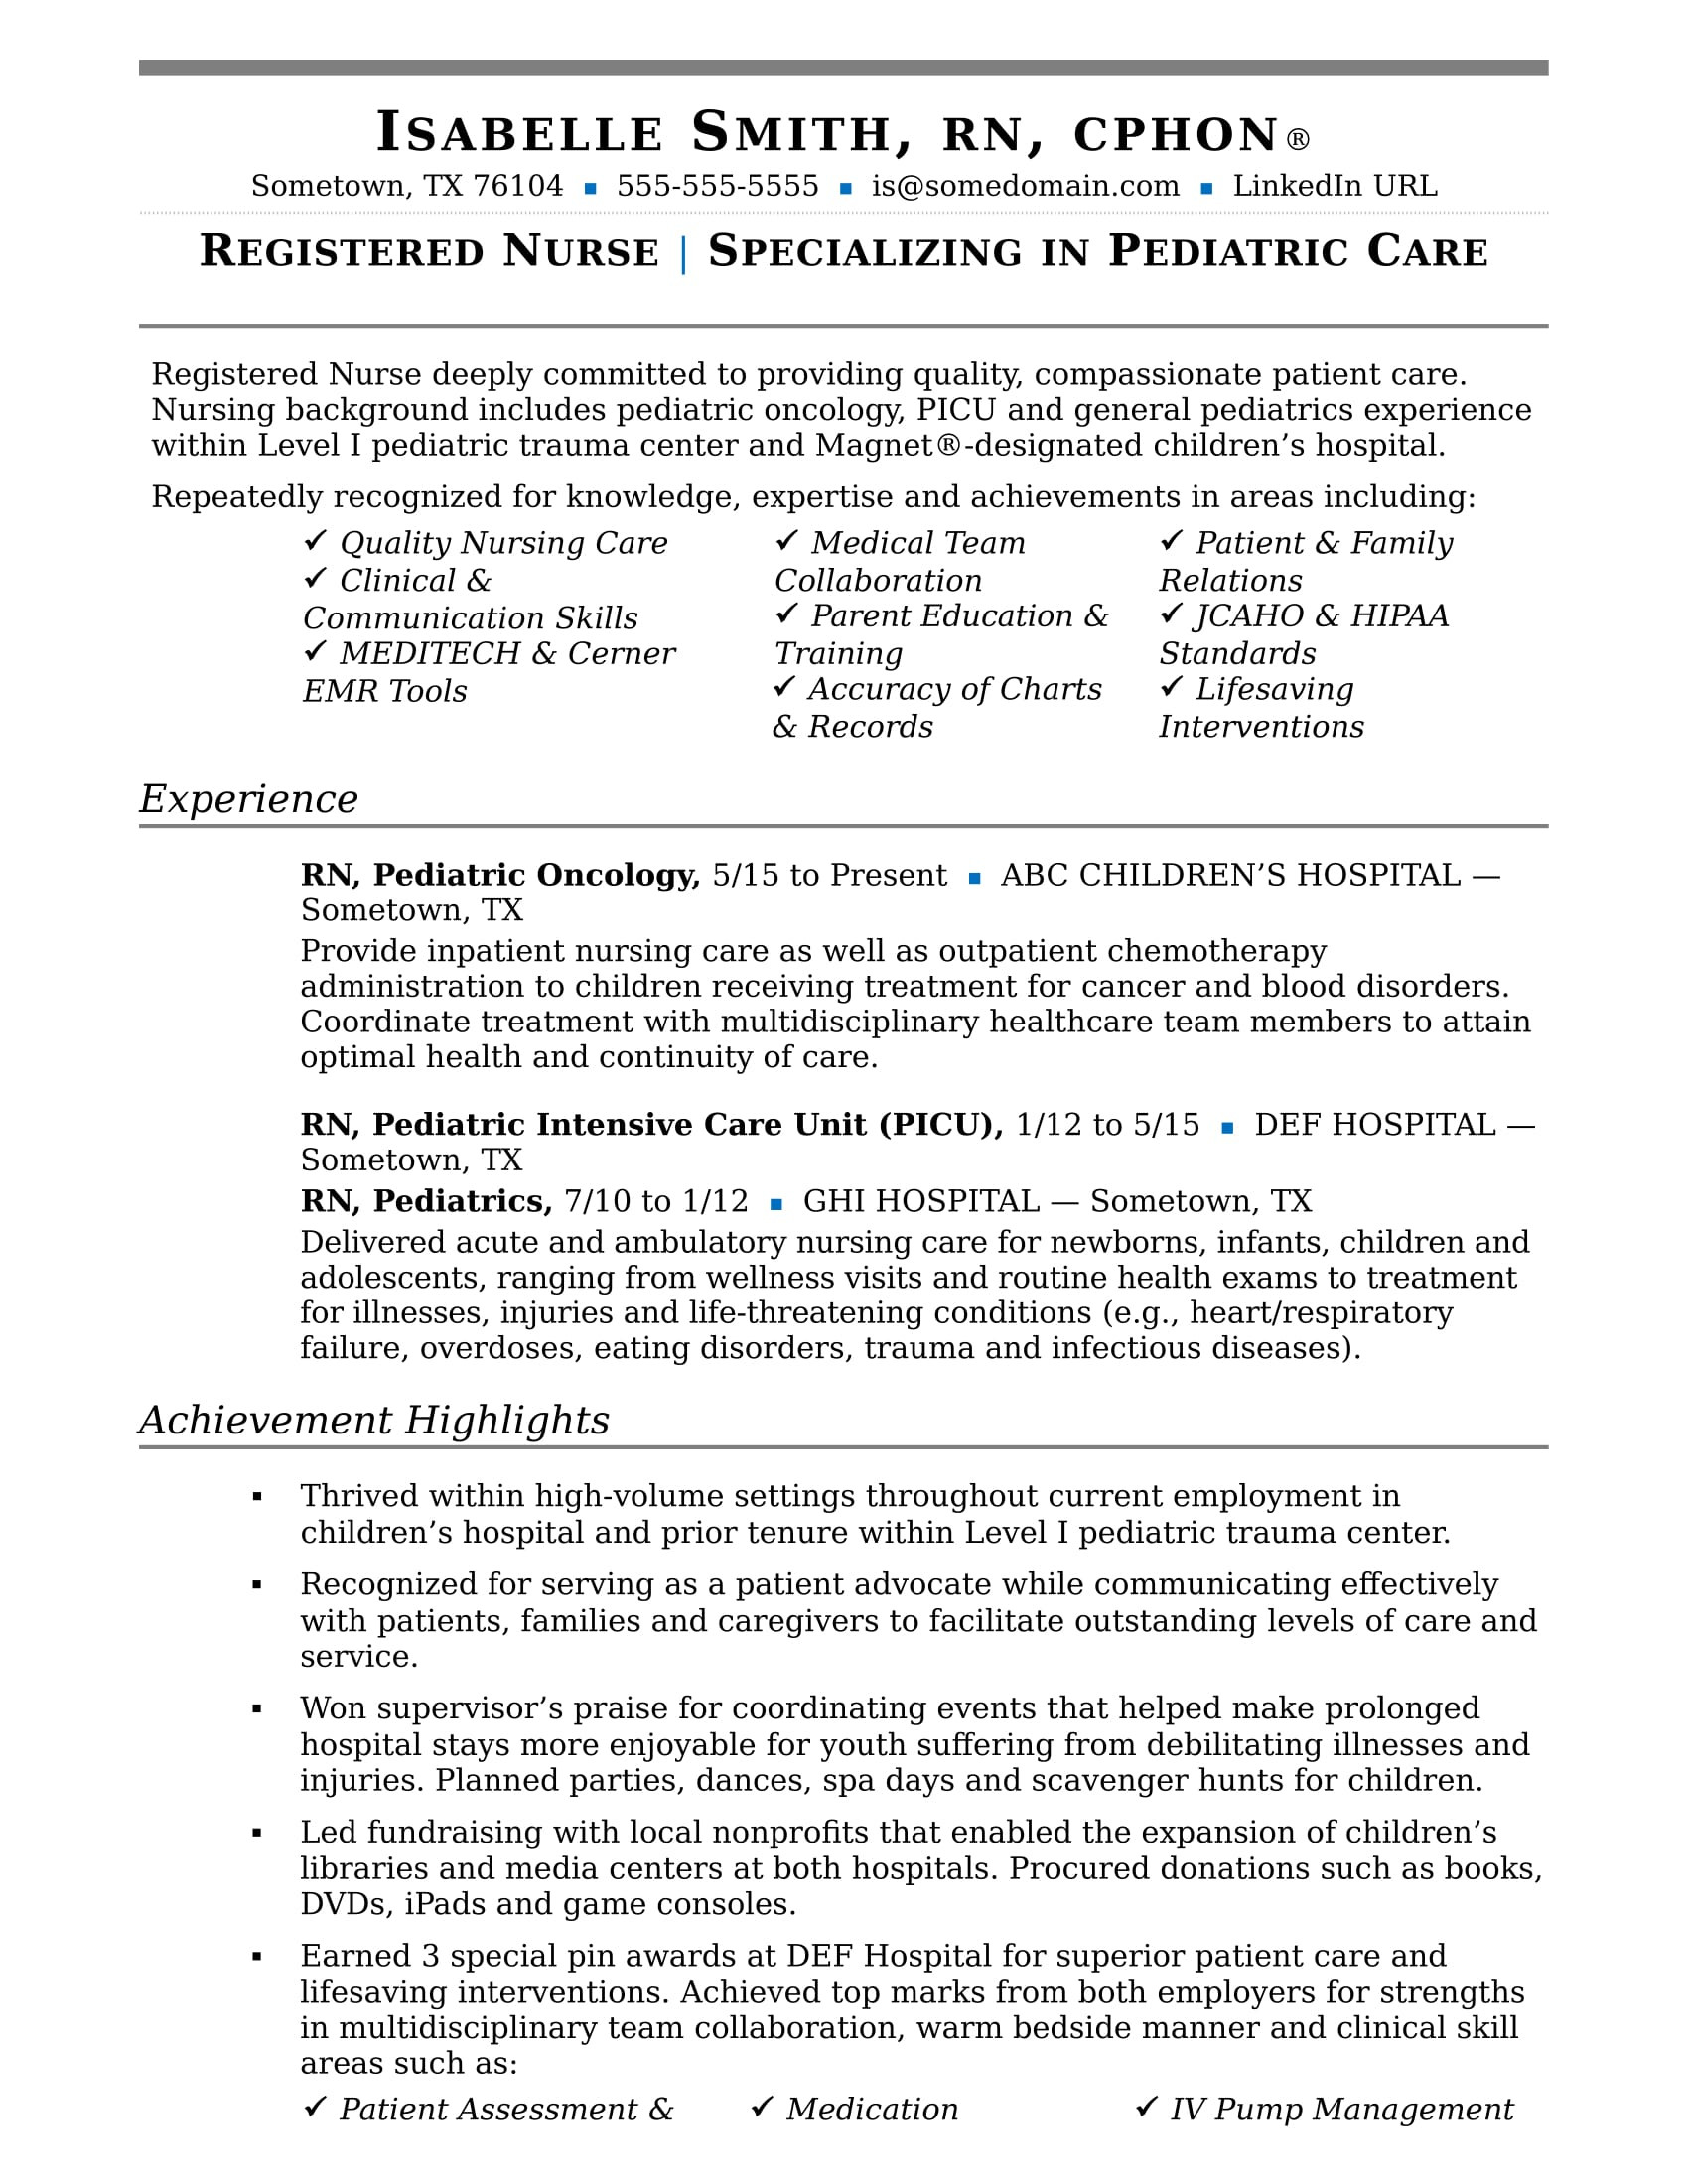 Sample Of Resume for Rn Bsn Nurse Resume Sample Monster.com